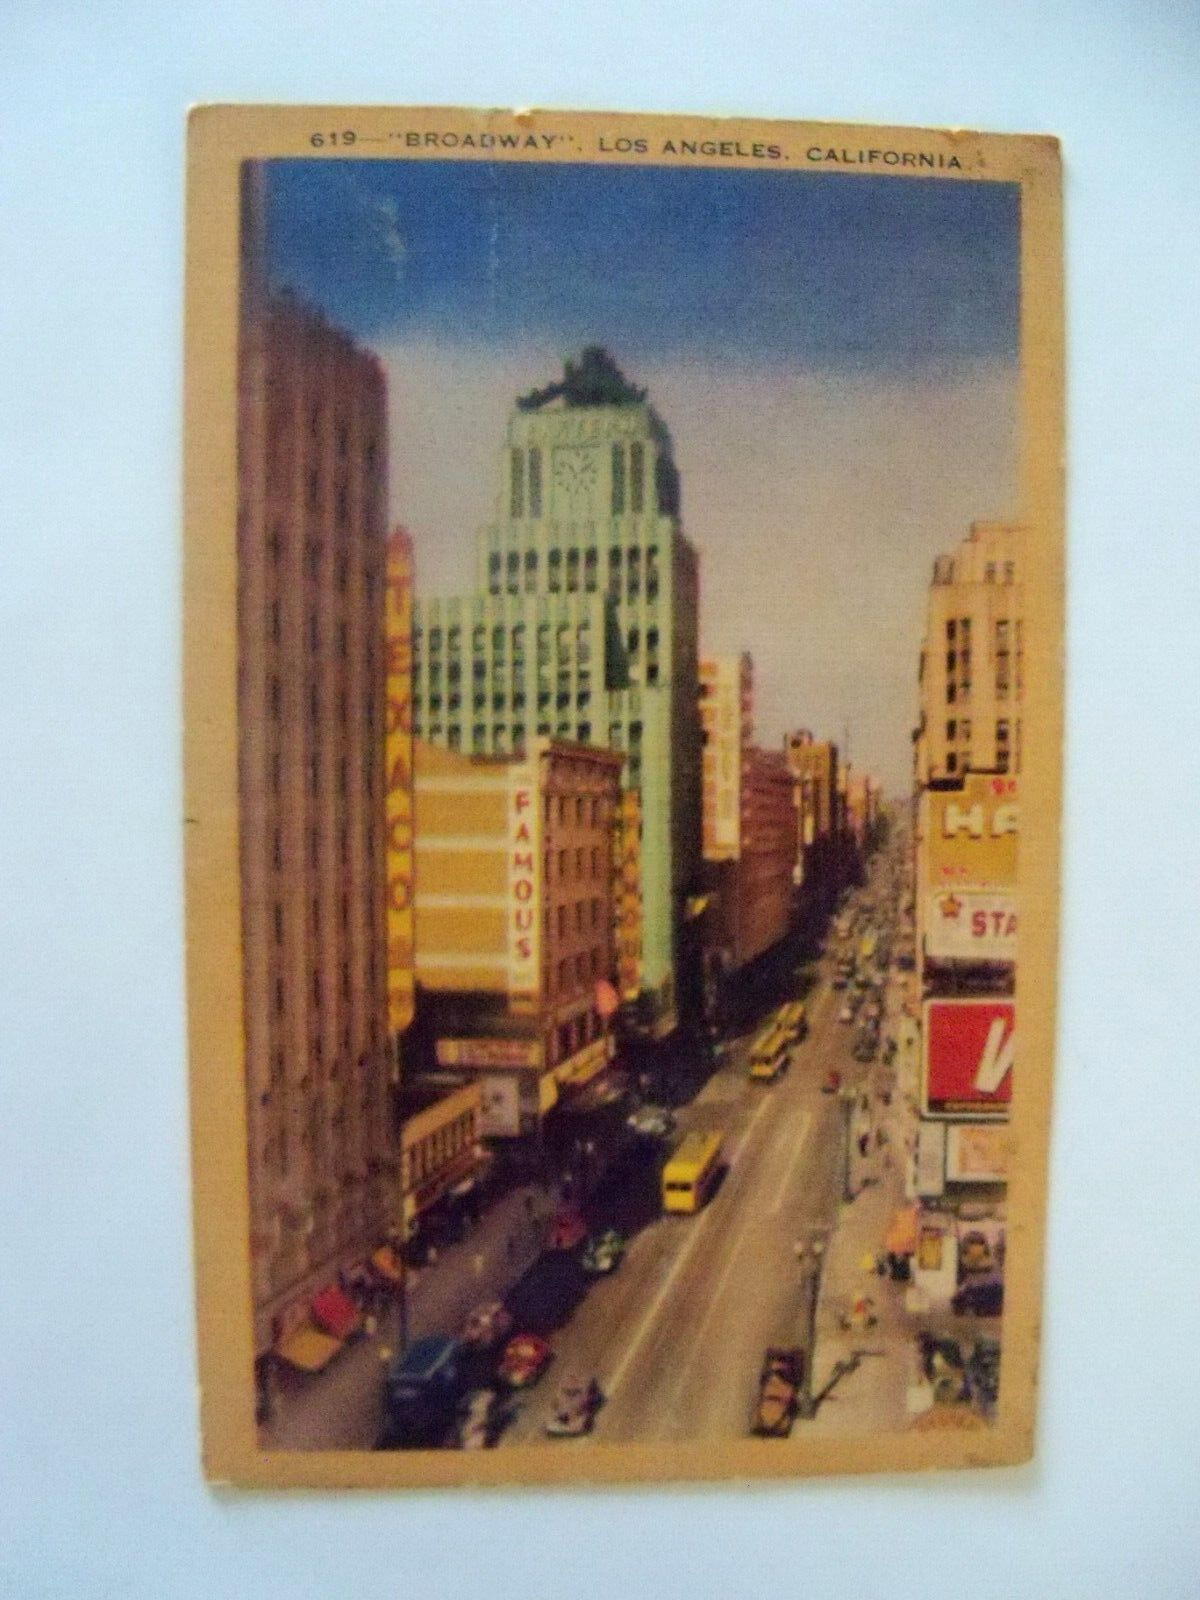 Vintage Los Angeles Broadway Pstcard  Trolleys, Cars, People, Handcolored